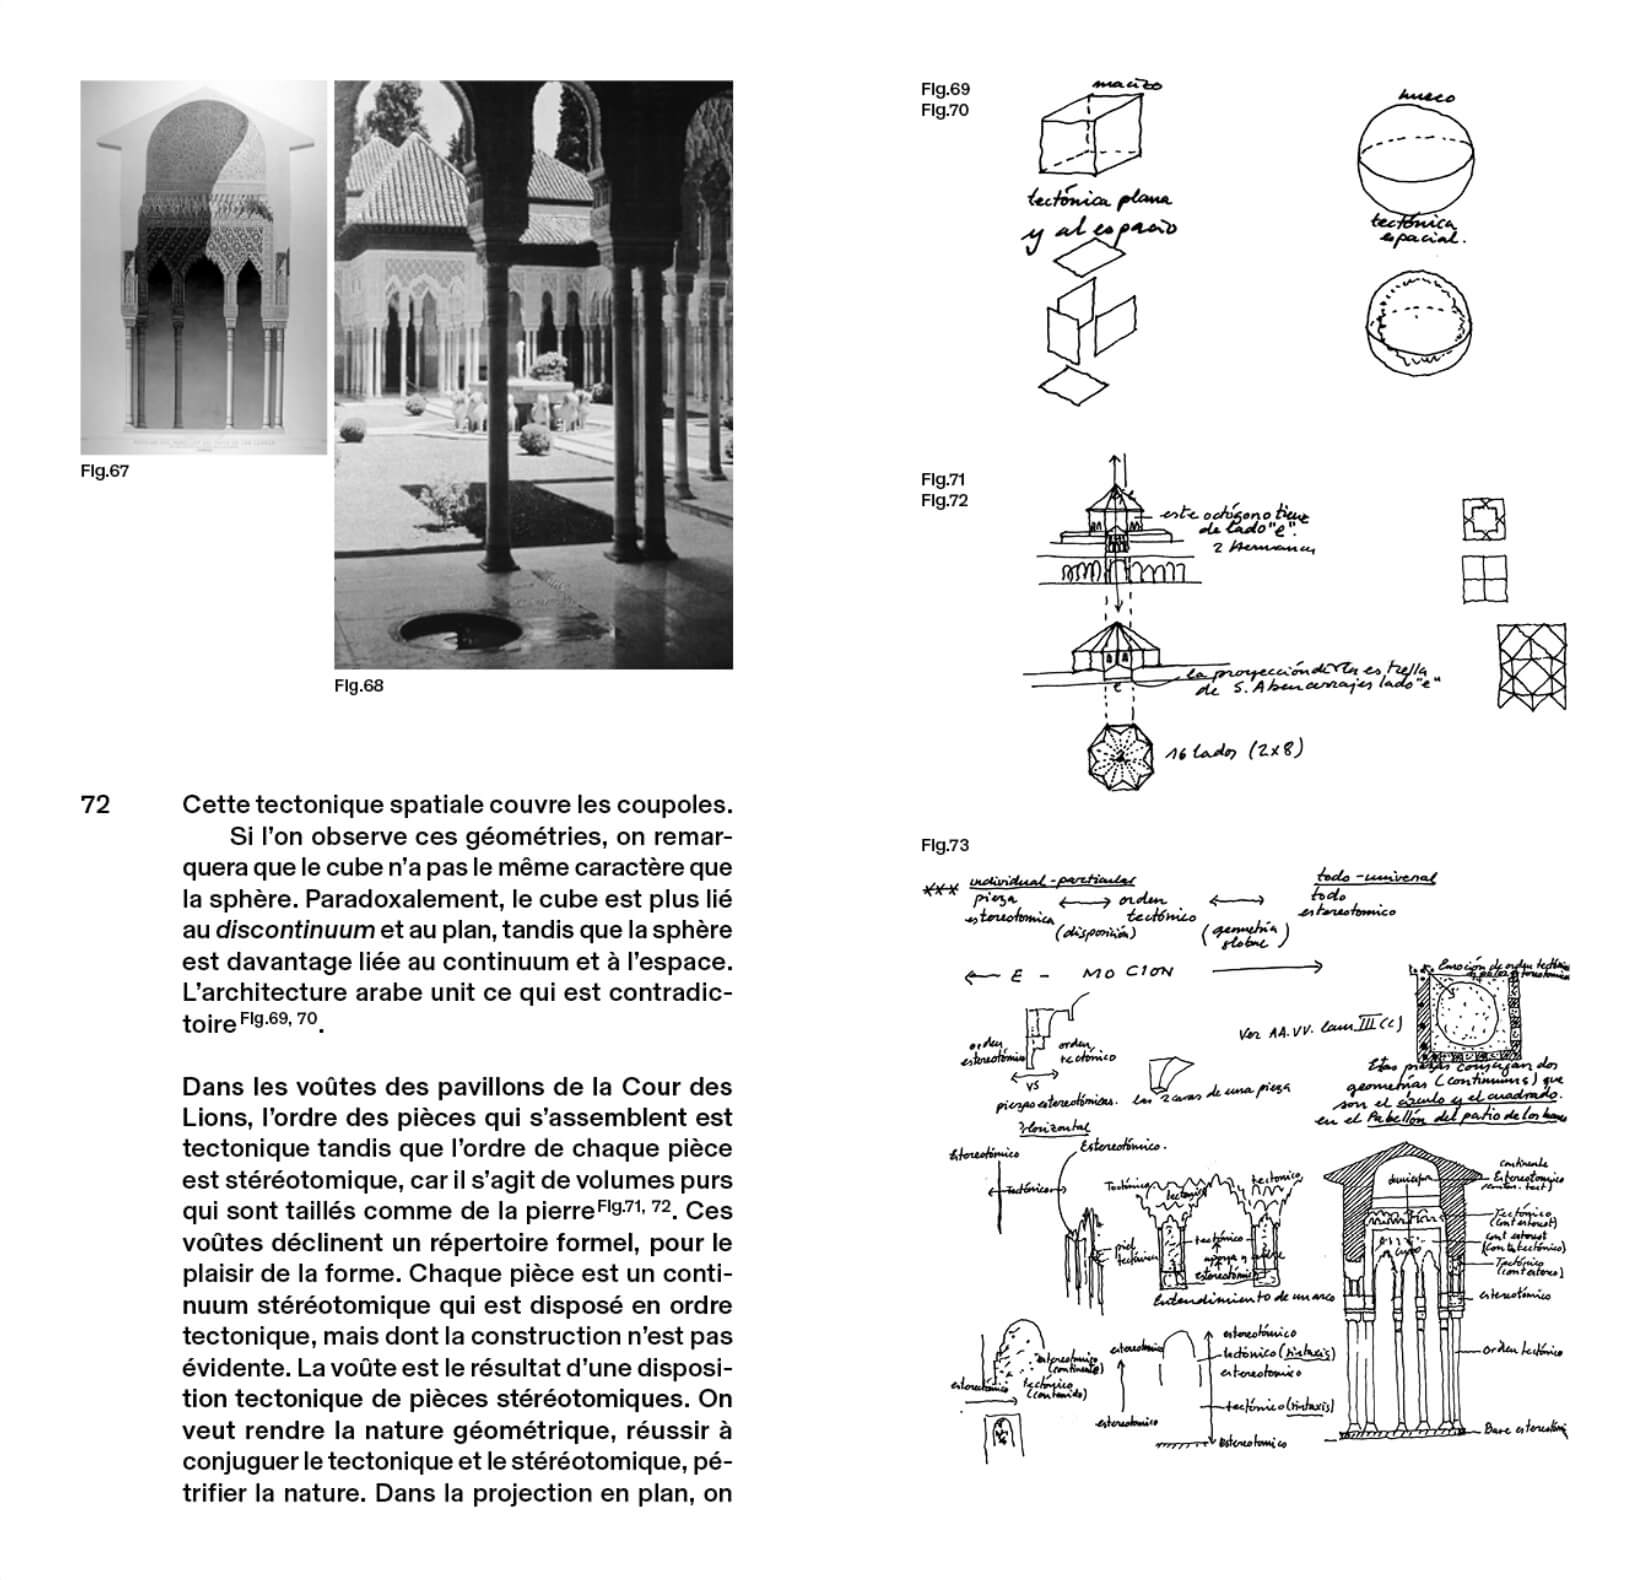 le-mur-concept-essentiel-dans-le-projet-architectonique-materalisation-idee-idealisation-matiere-guisado-caryatide-cosa-mentale-2